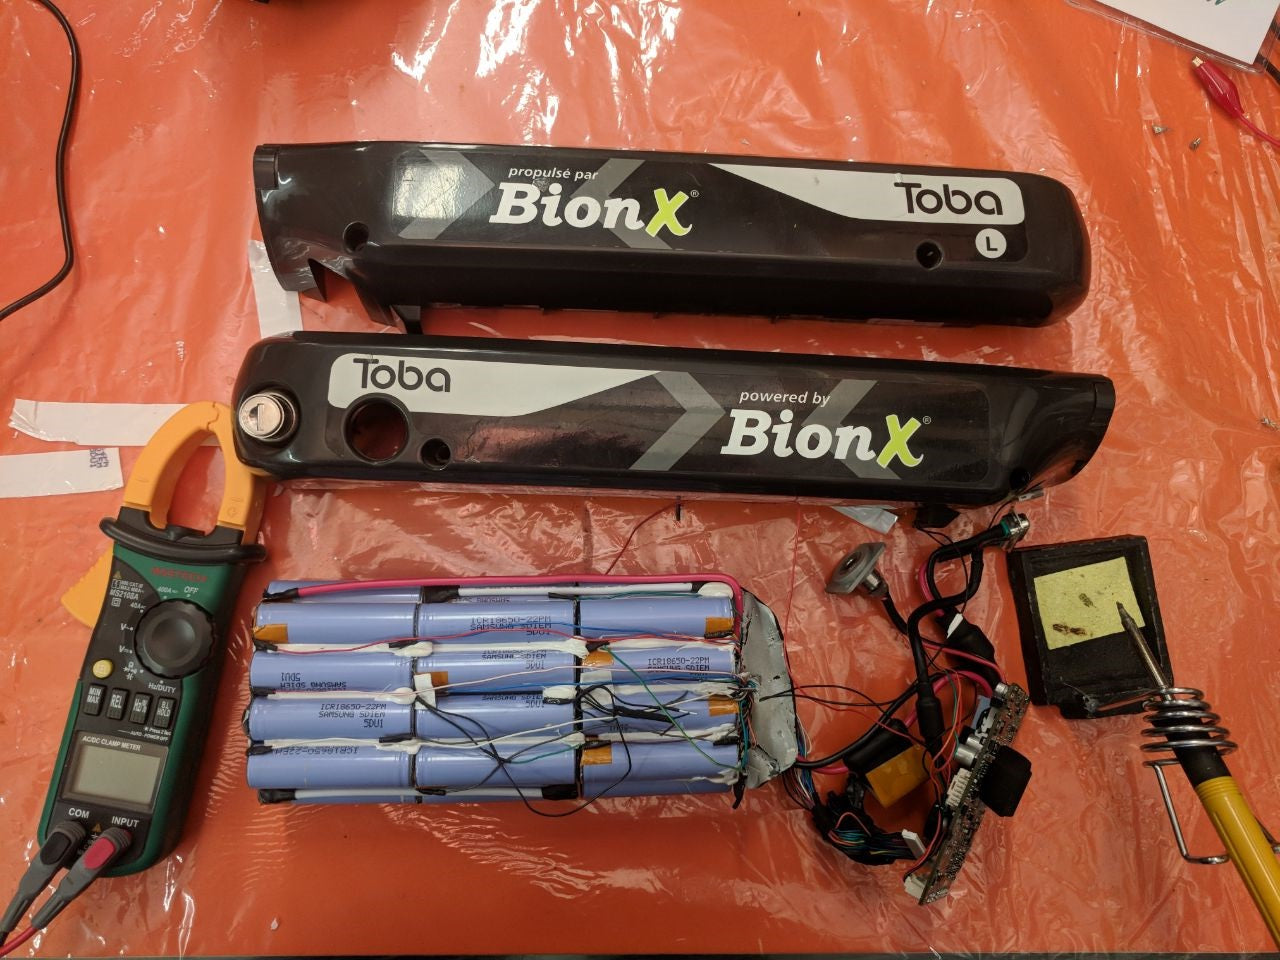 BionX battery repair or refurbish